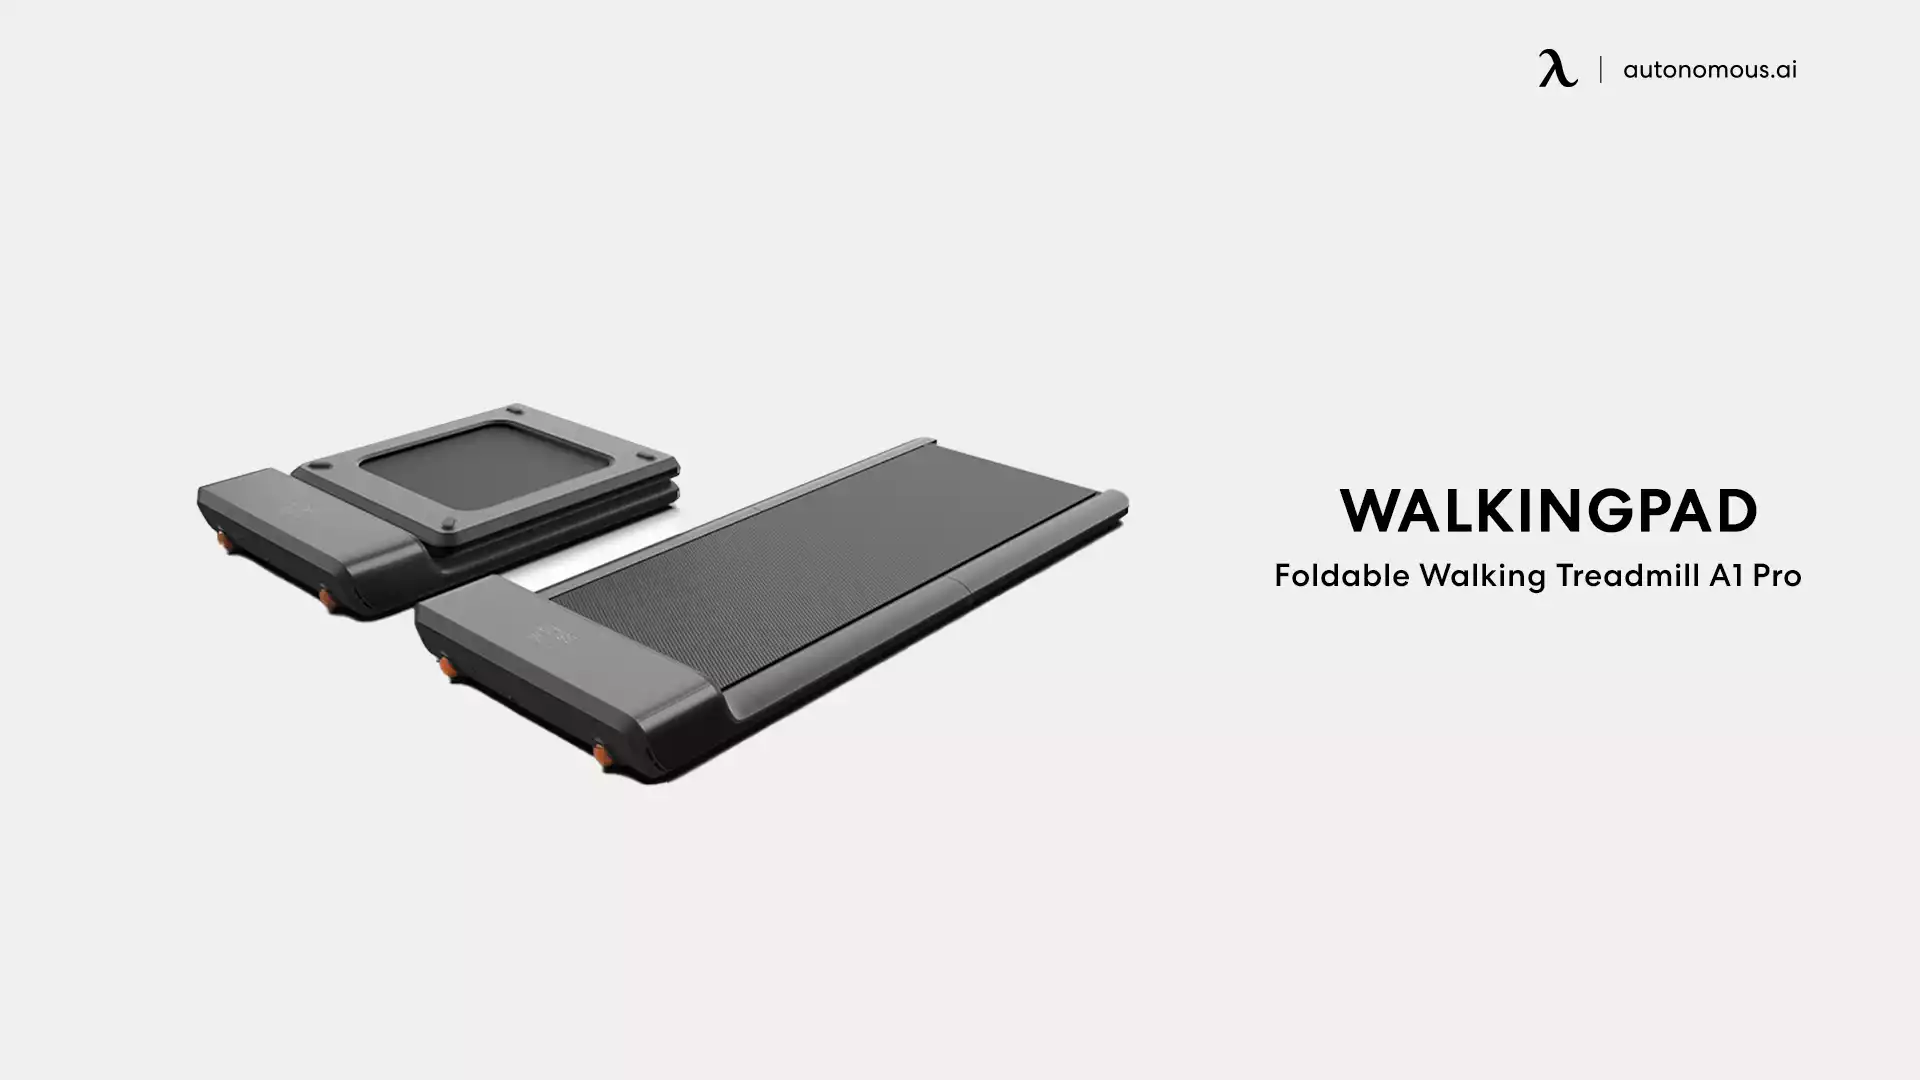 Foldable Walking Treadmill A1 Pro by WalkingPad